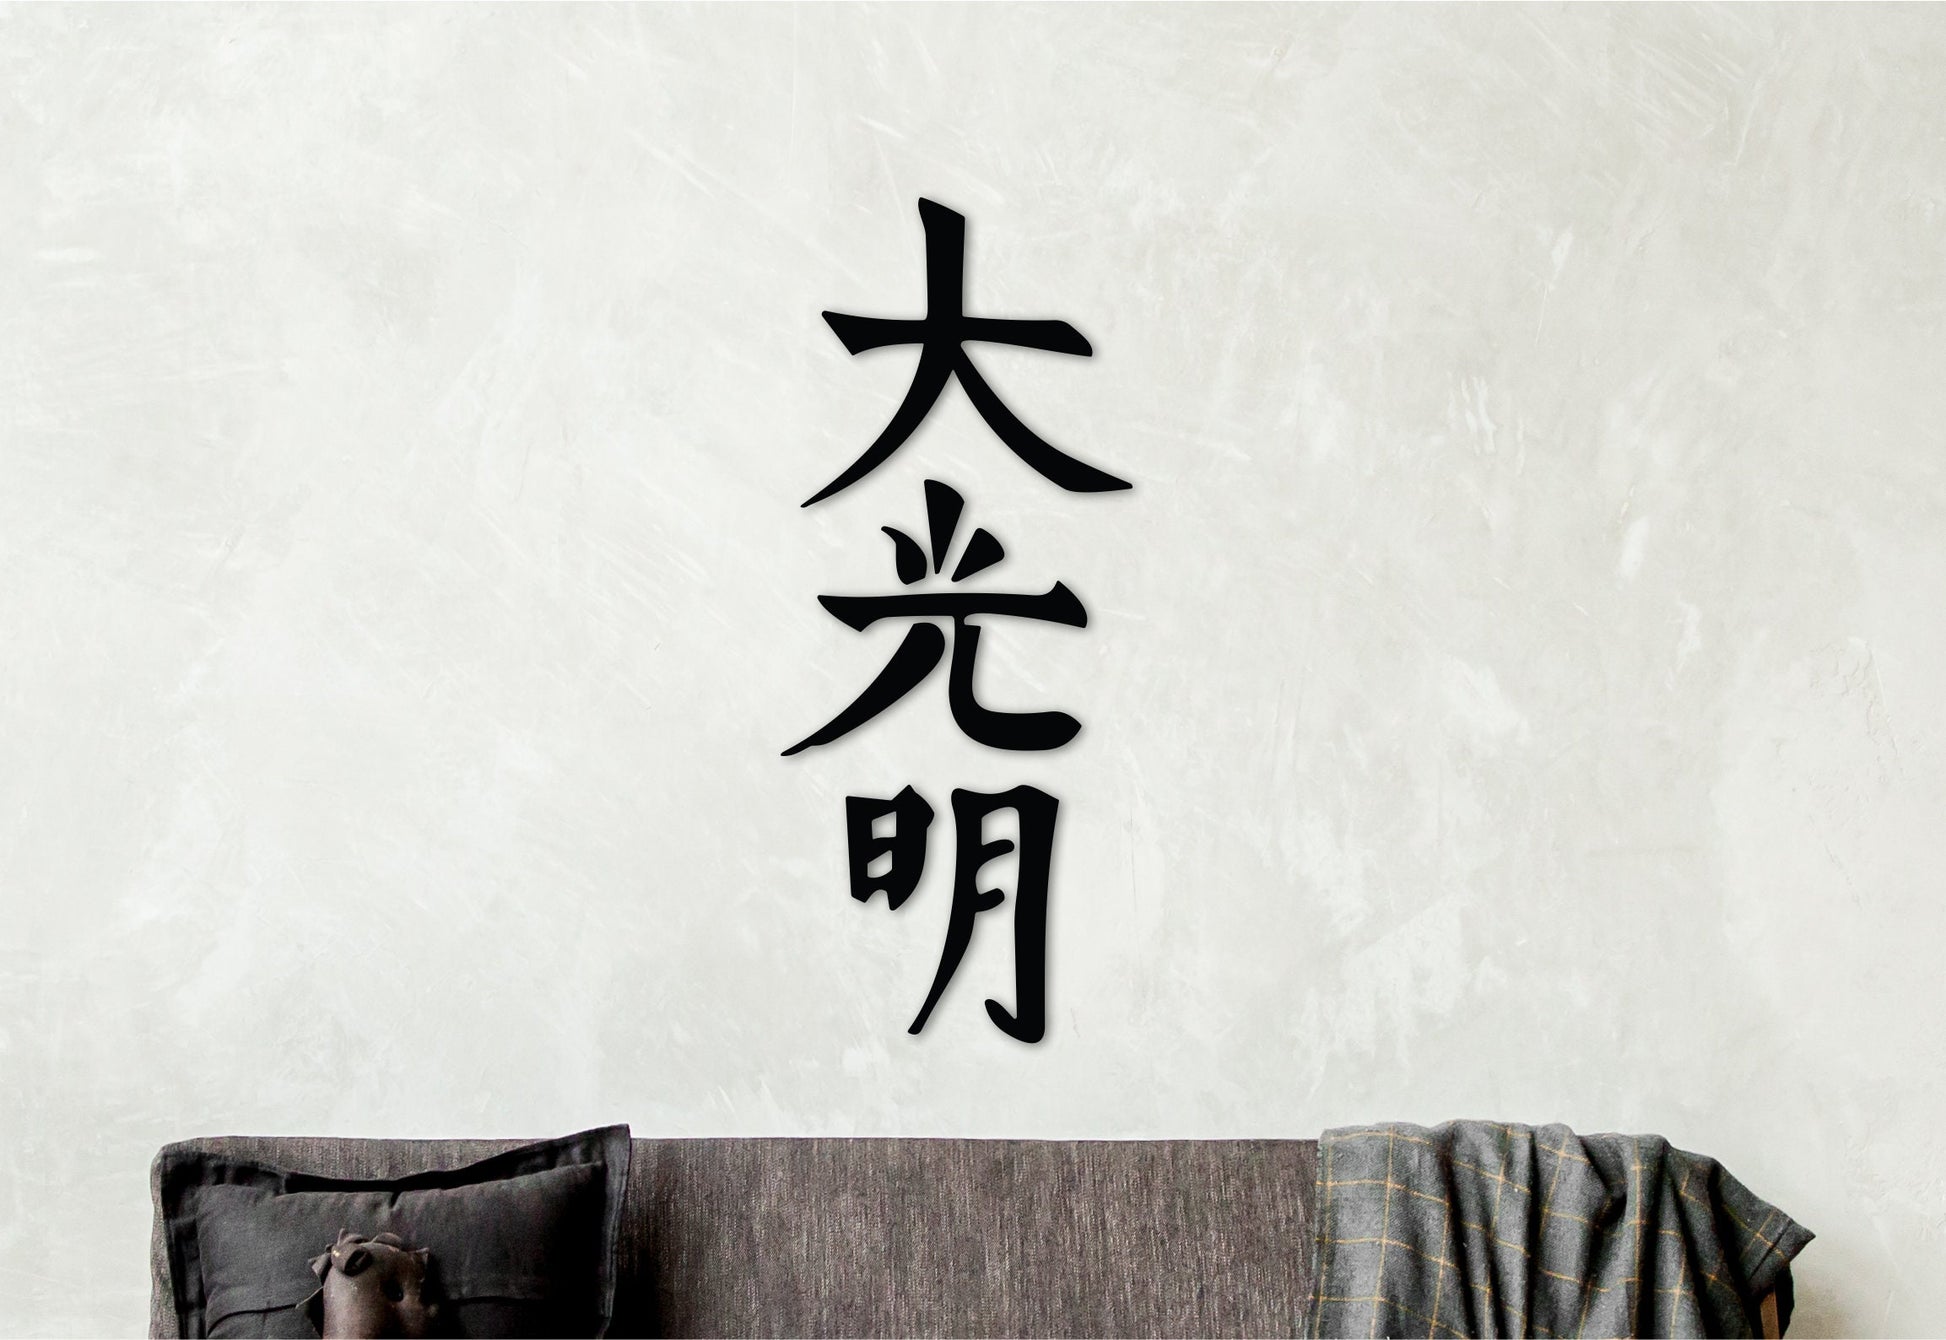 Dai ko myo, reiki symbols wall art, spiritual artwork, reiki art, healing wall art, yoga studio decor, spiritual wall art, japandi wall art